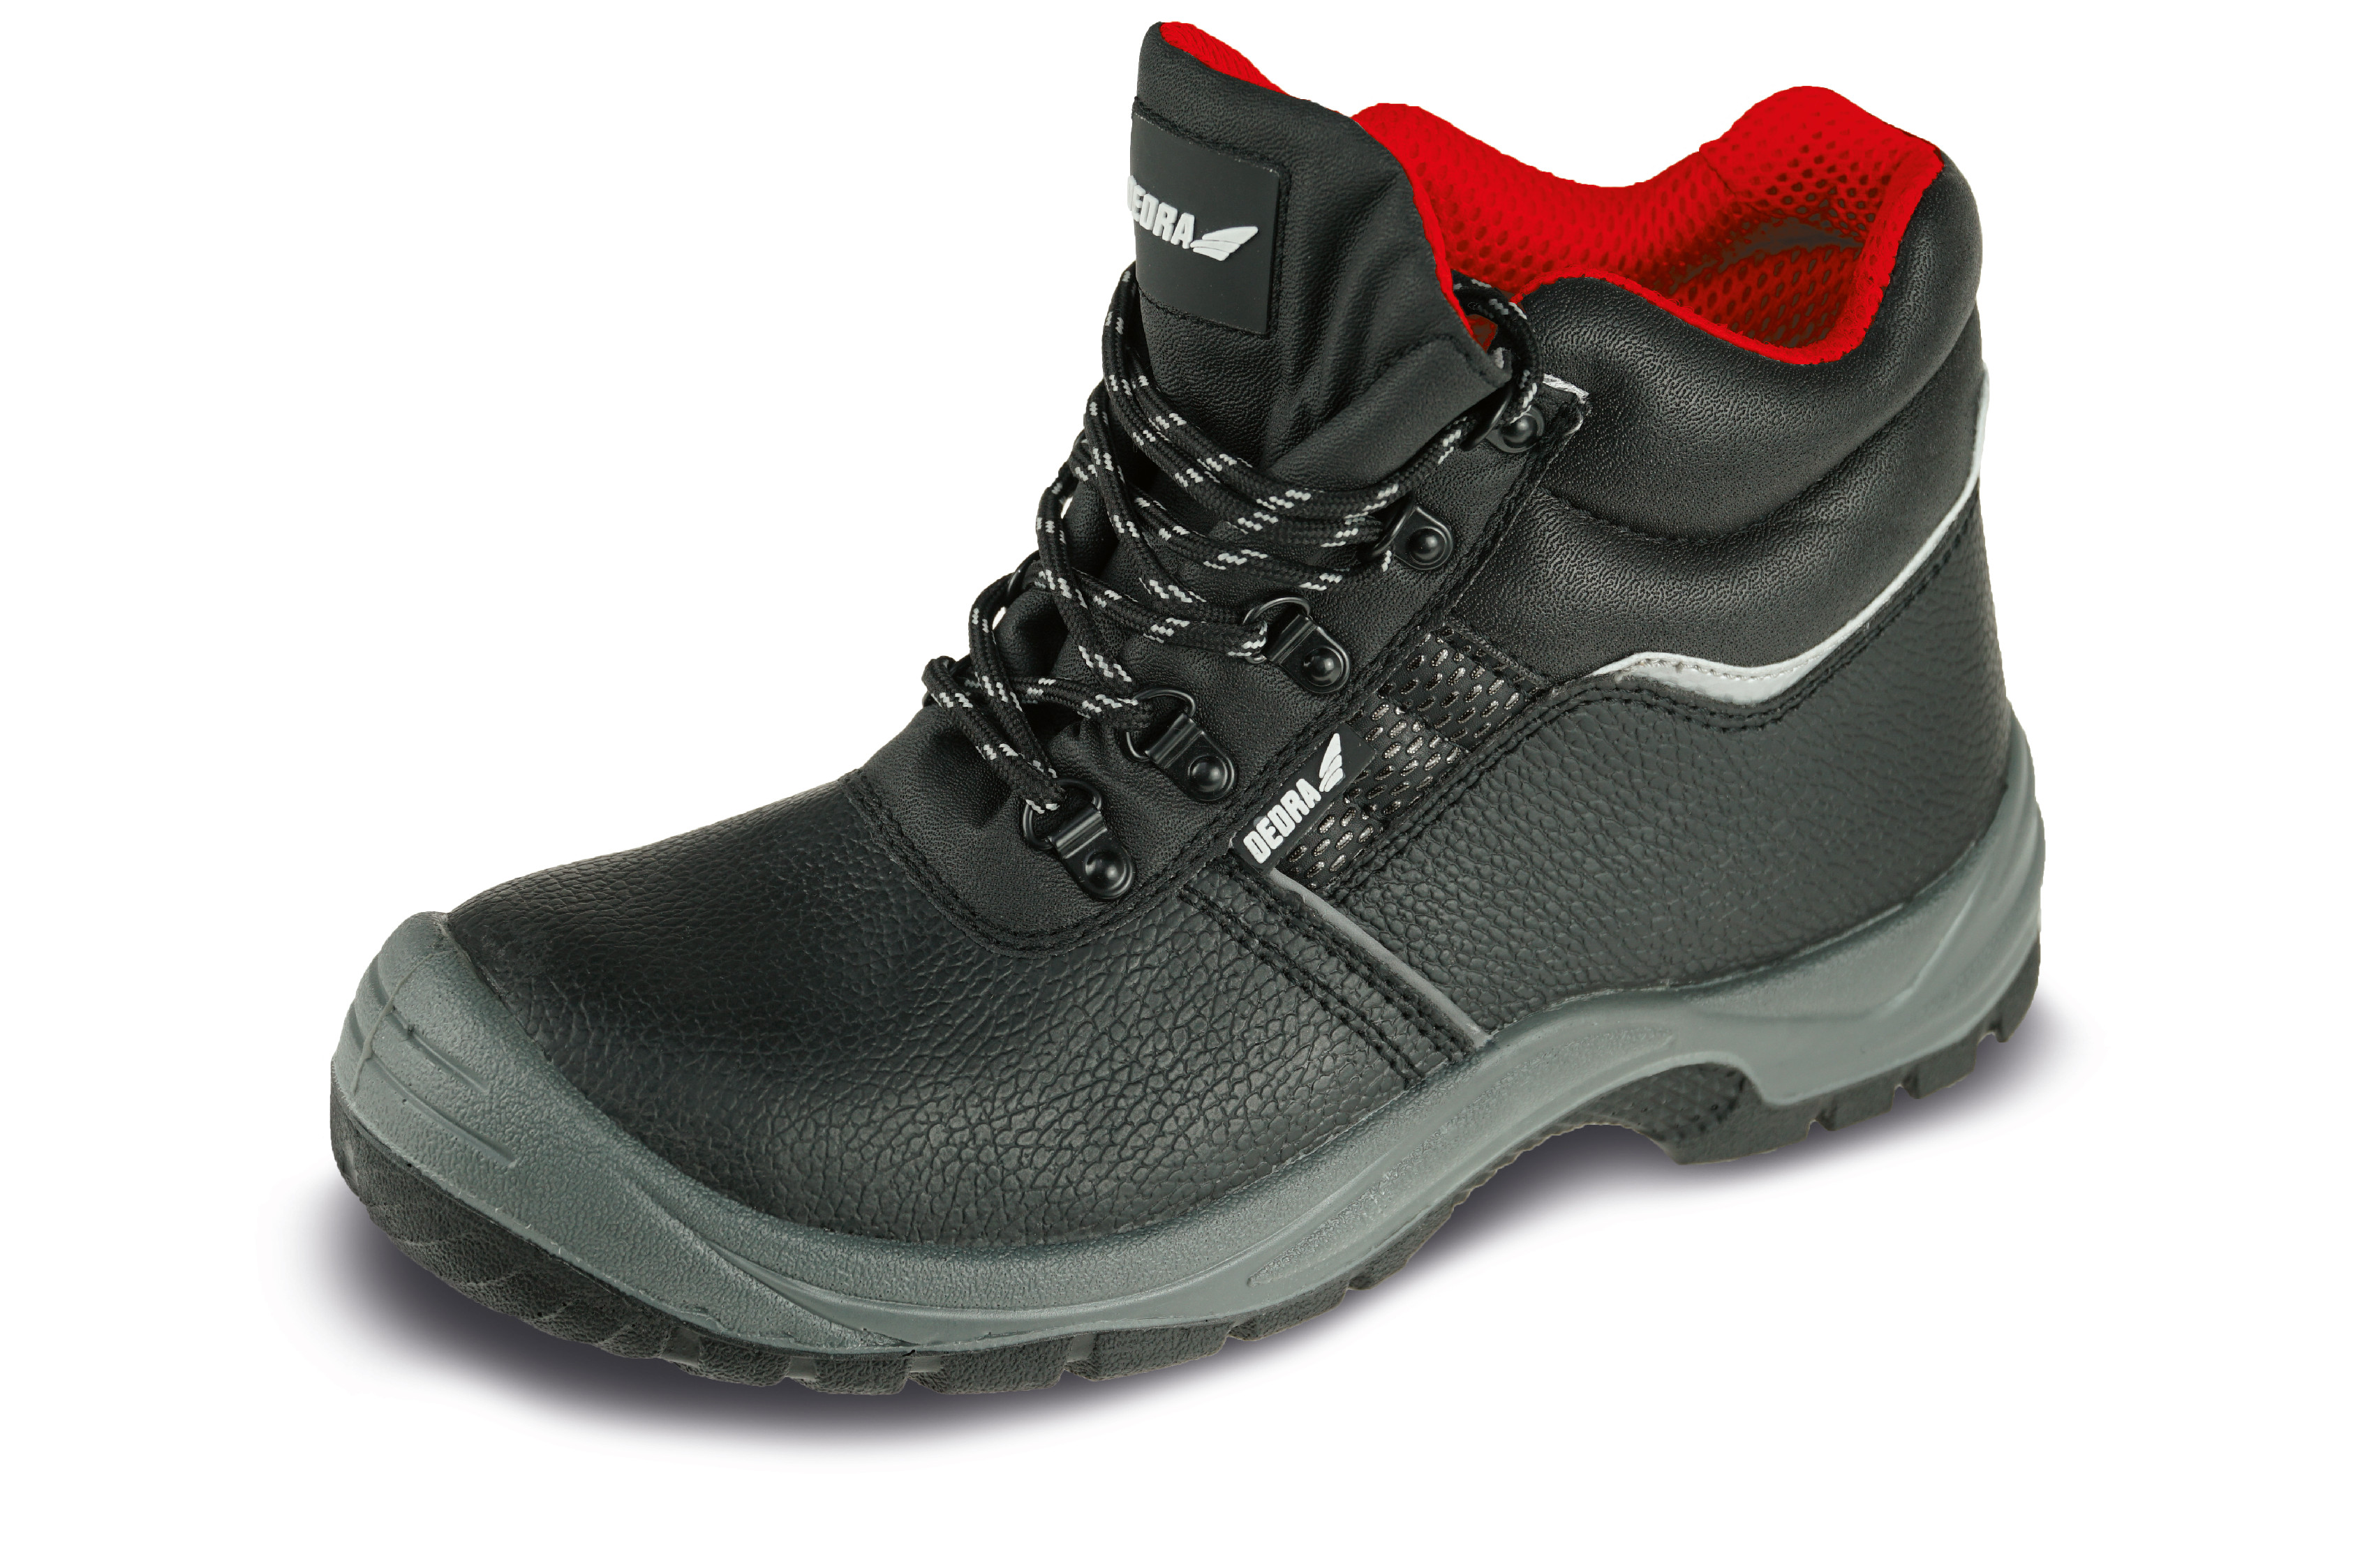 Bezpečnostní boty T1AW, kožené, velikost: 39, kat. S3 SRC DEDRA BH9T1AW-39 + Dárek, servis bez starostí v hodnotě 300Kč